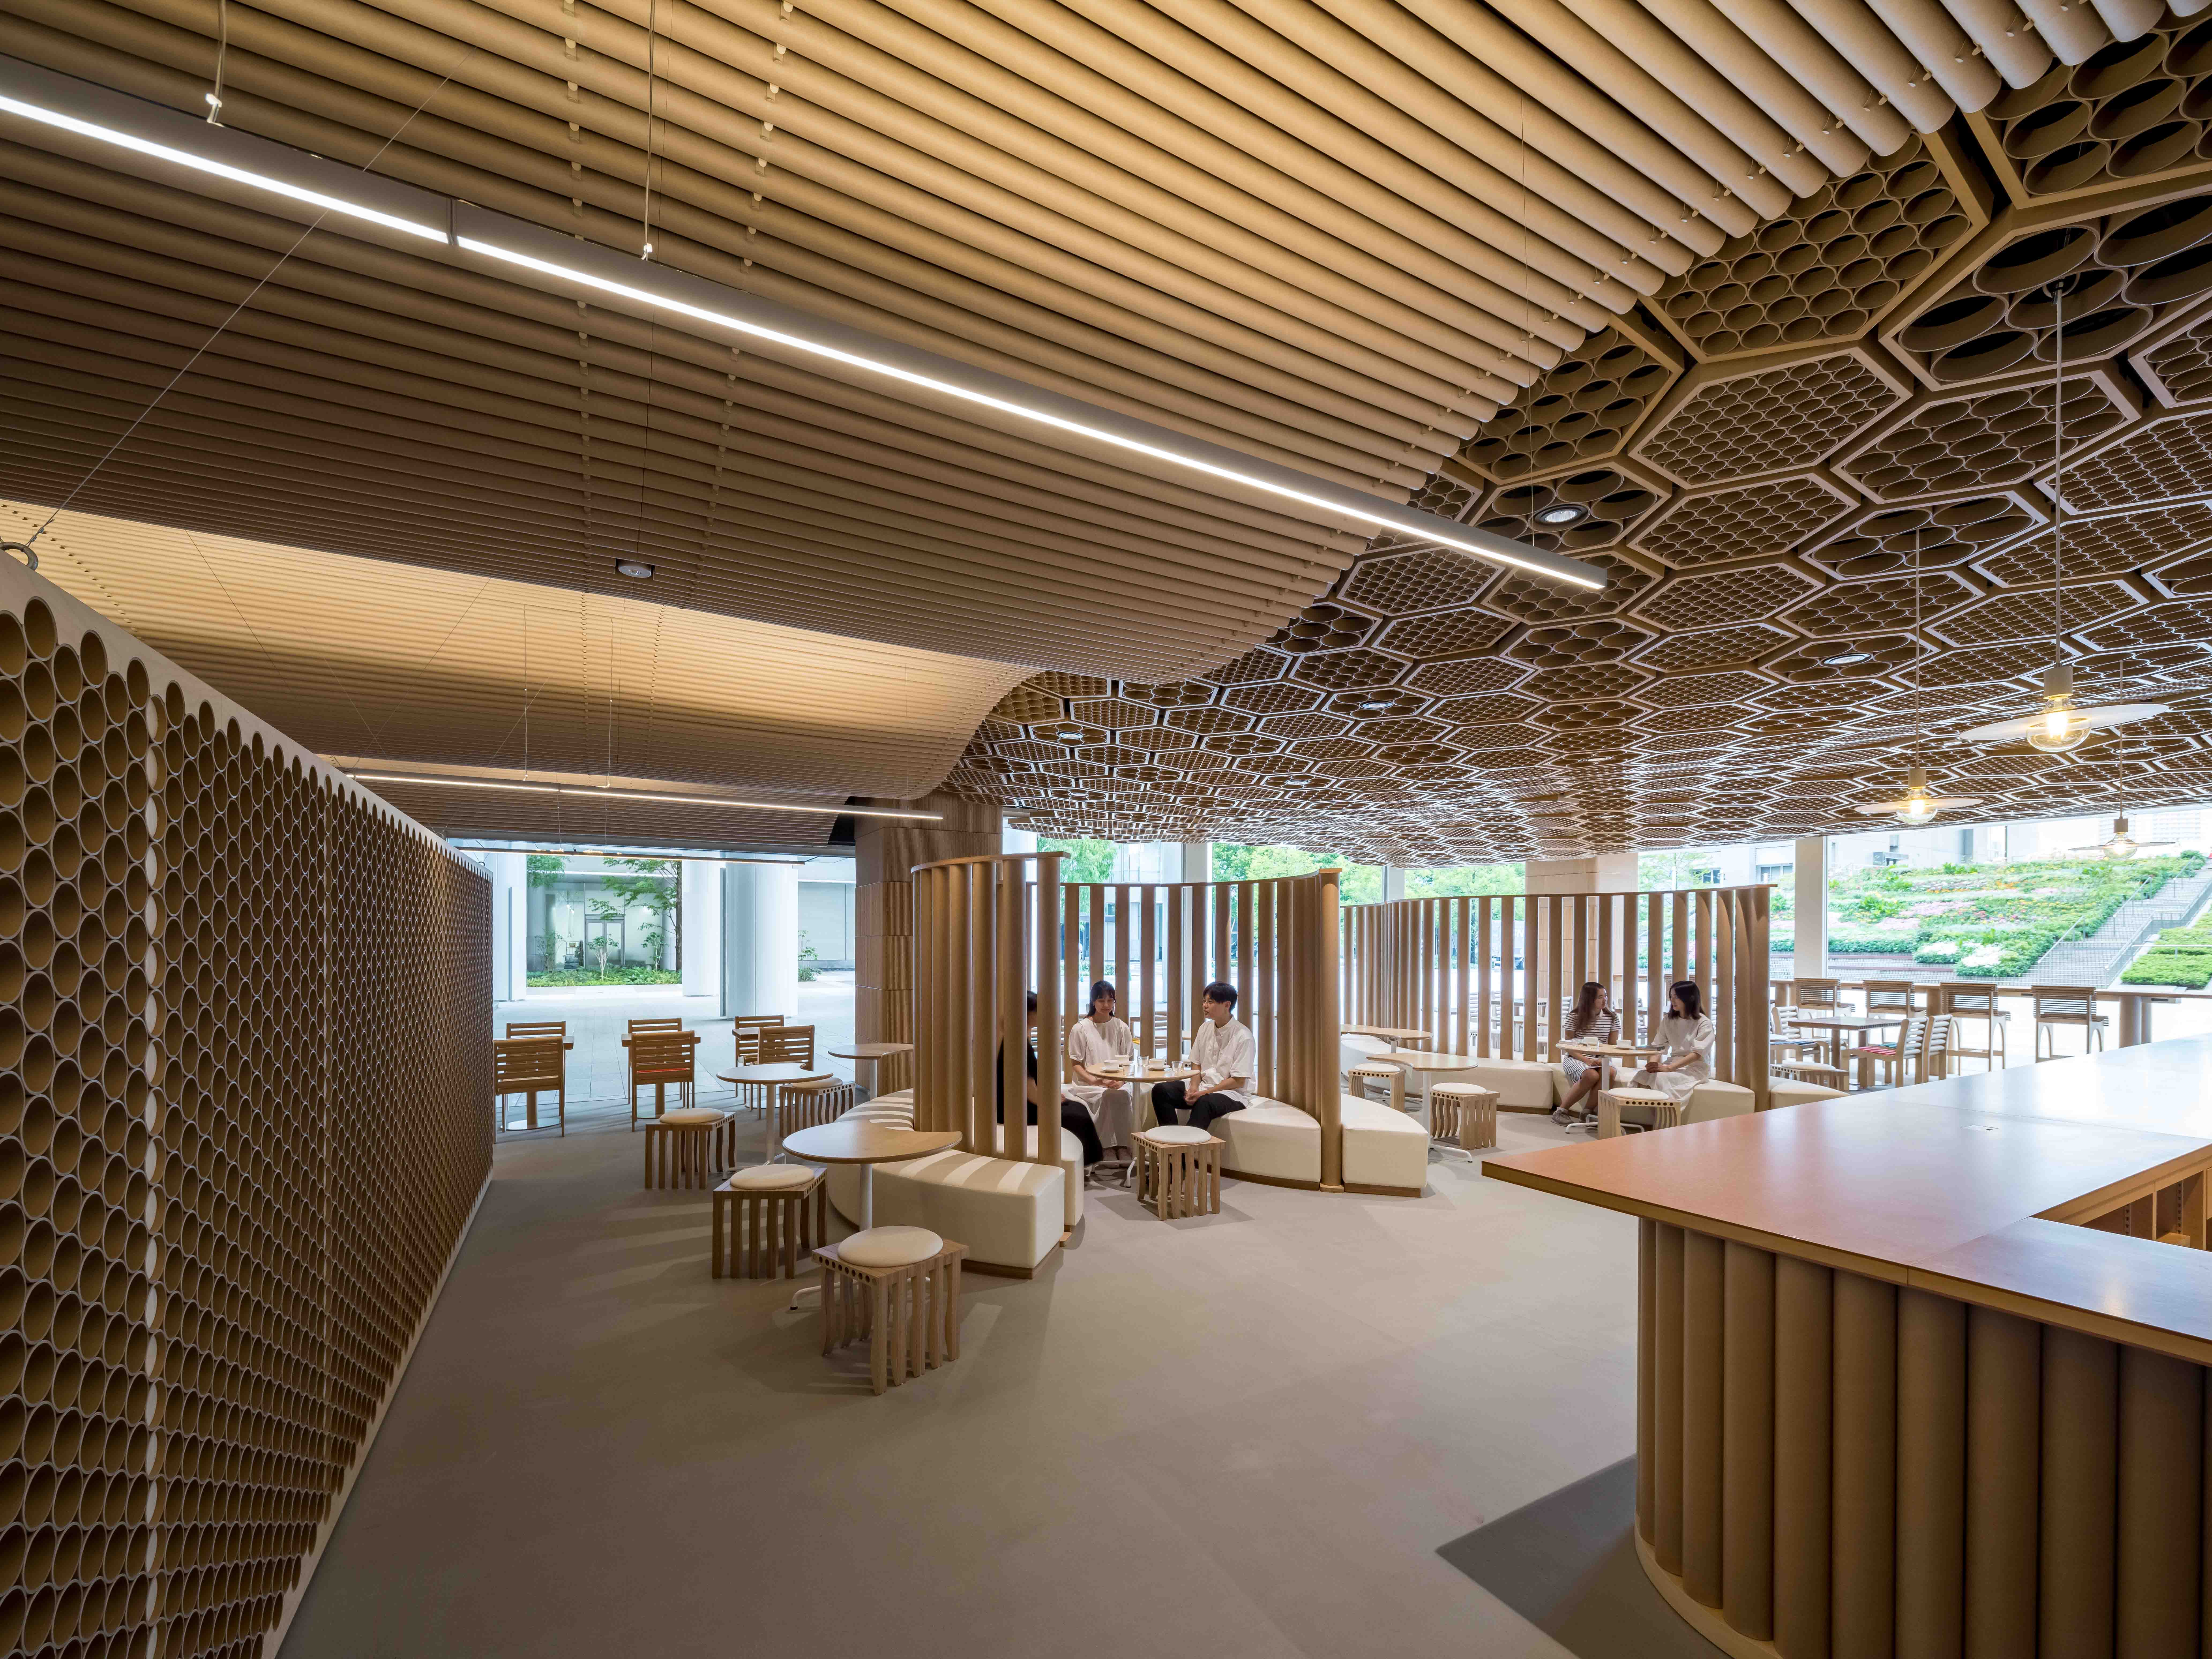 建築家 坂 茂氏の設計によるカフェ、レストランが豊洲キャンパス